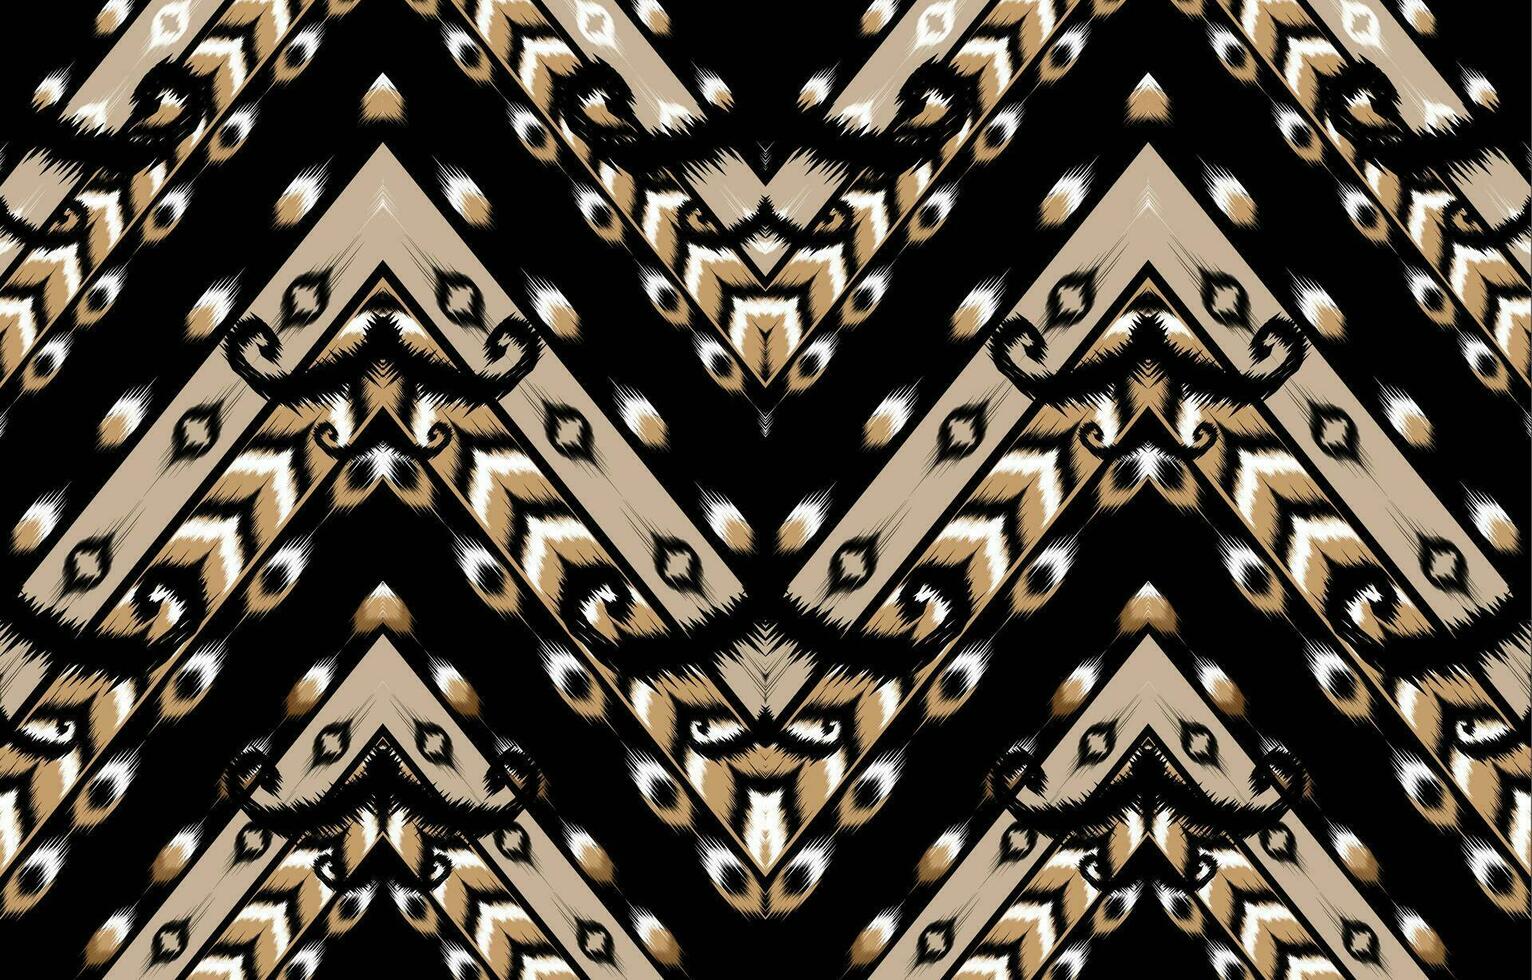 ikat blommig paisley broderi på svart bakgrund.geometrisk etnisk orientalisk mönster traditionell. aztec stil abstrakt vektor illustration.design för textur, tyg, kläder, inslagning, dekoration, matta